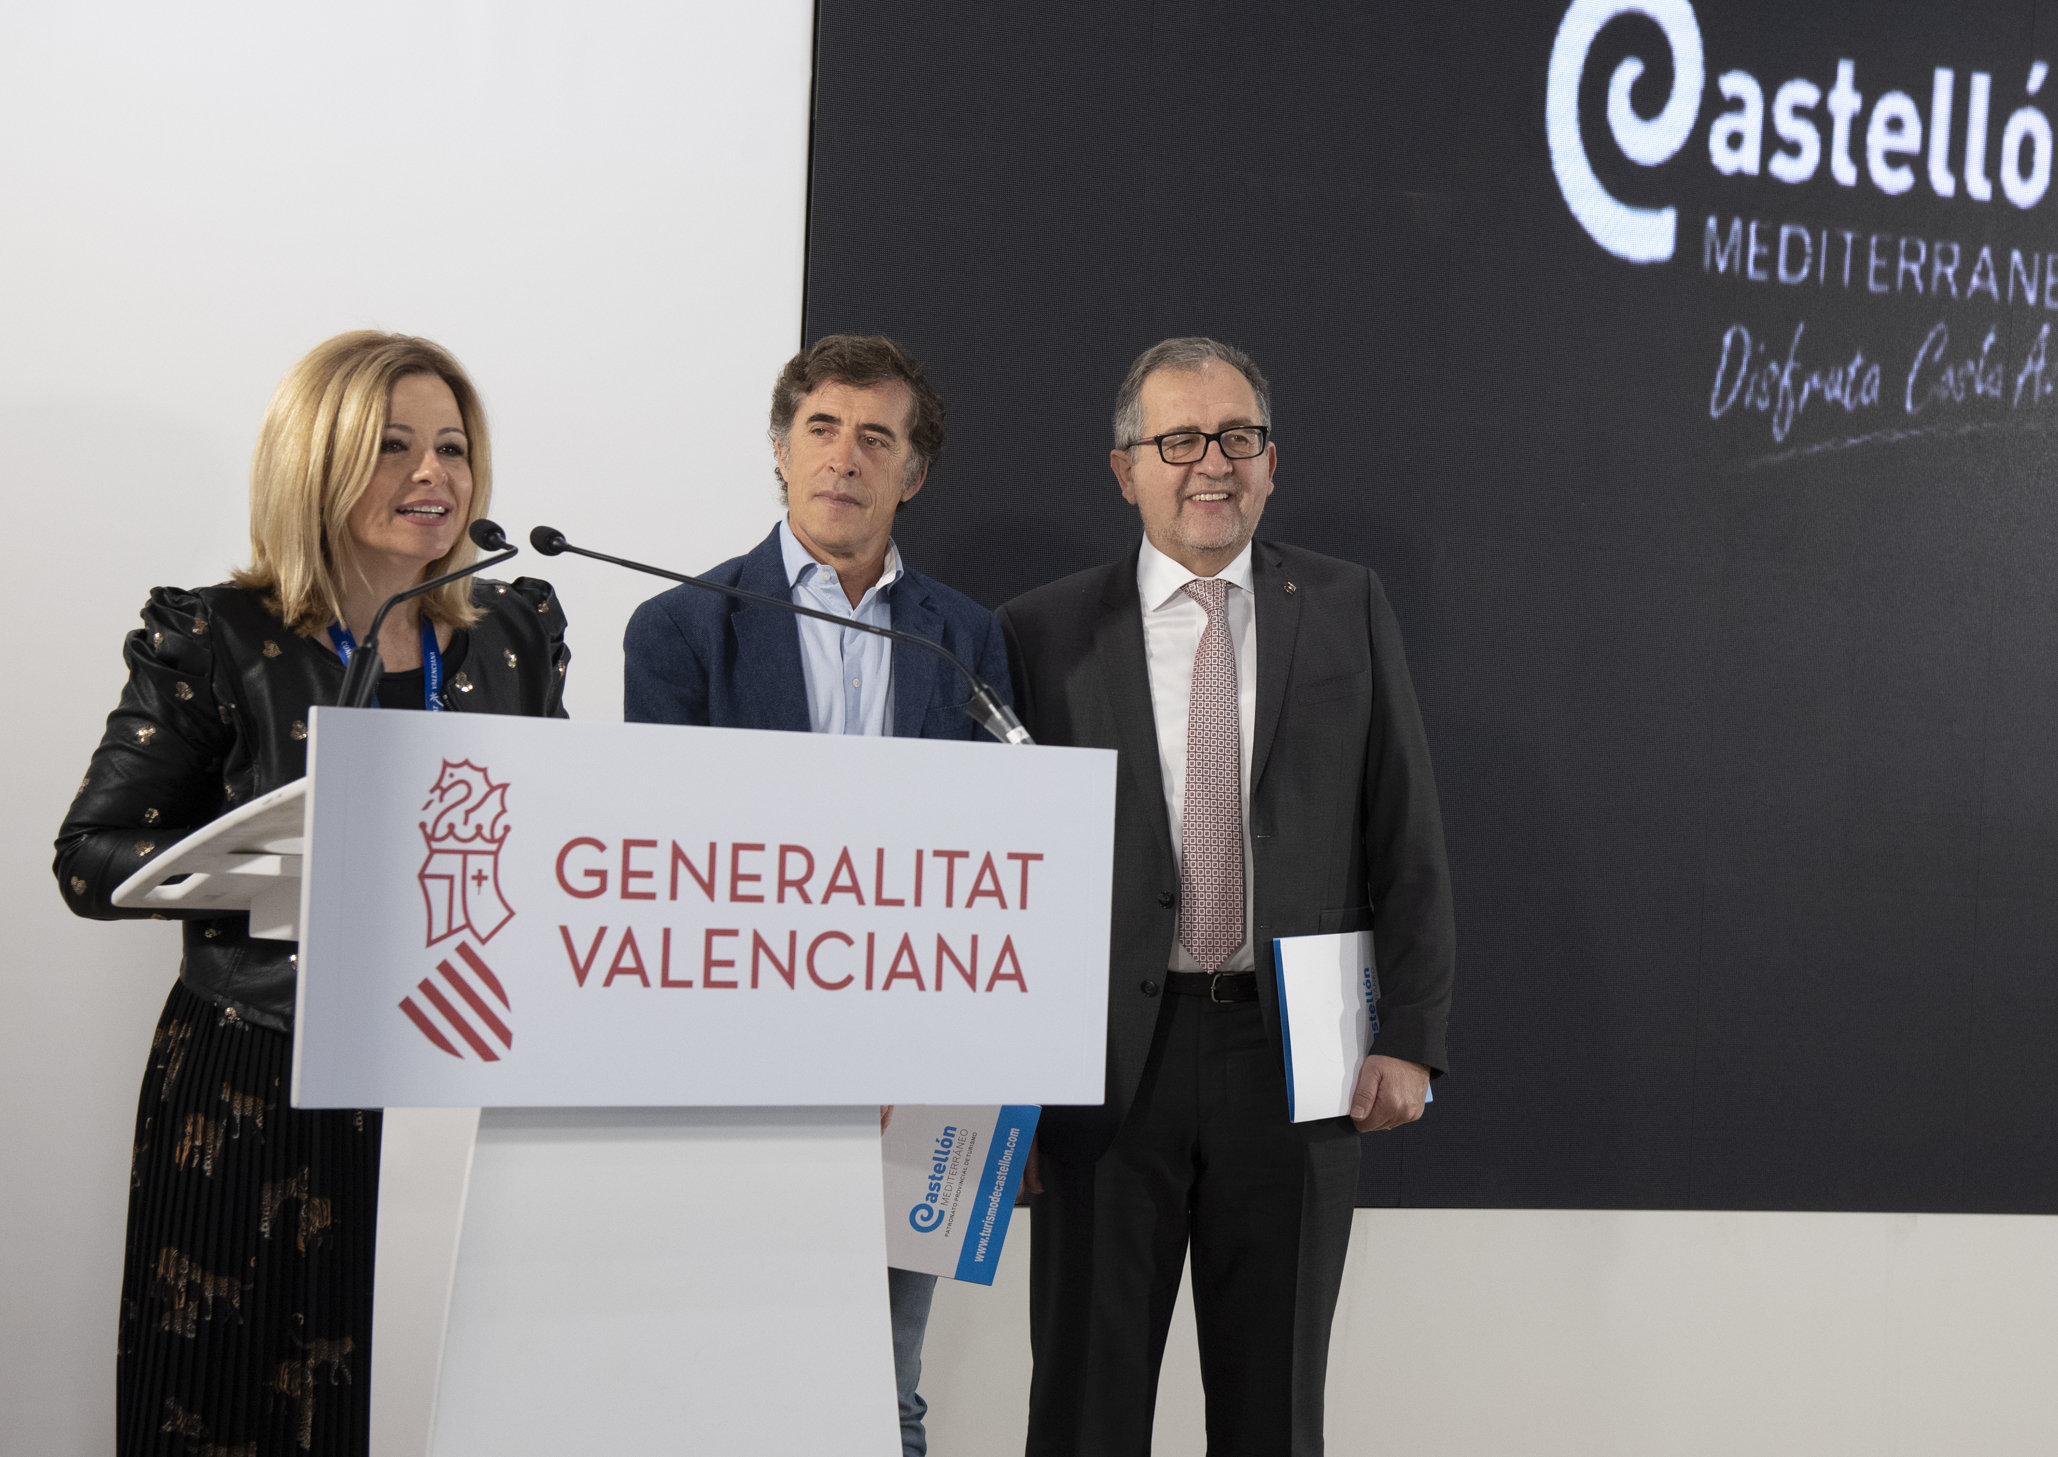 La Diputació ajorna el termini de preinscripció per al programa de vacances Castelló Sènior 2020-2021